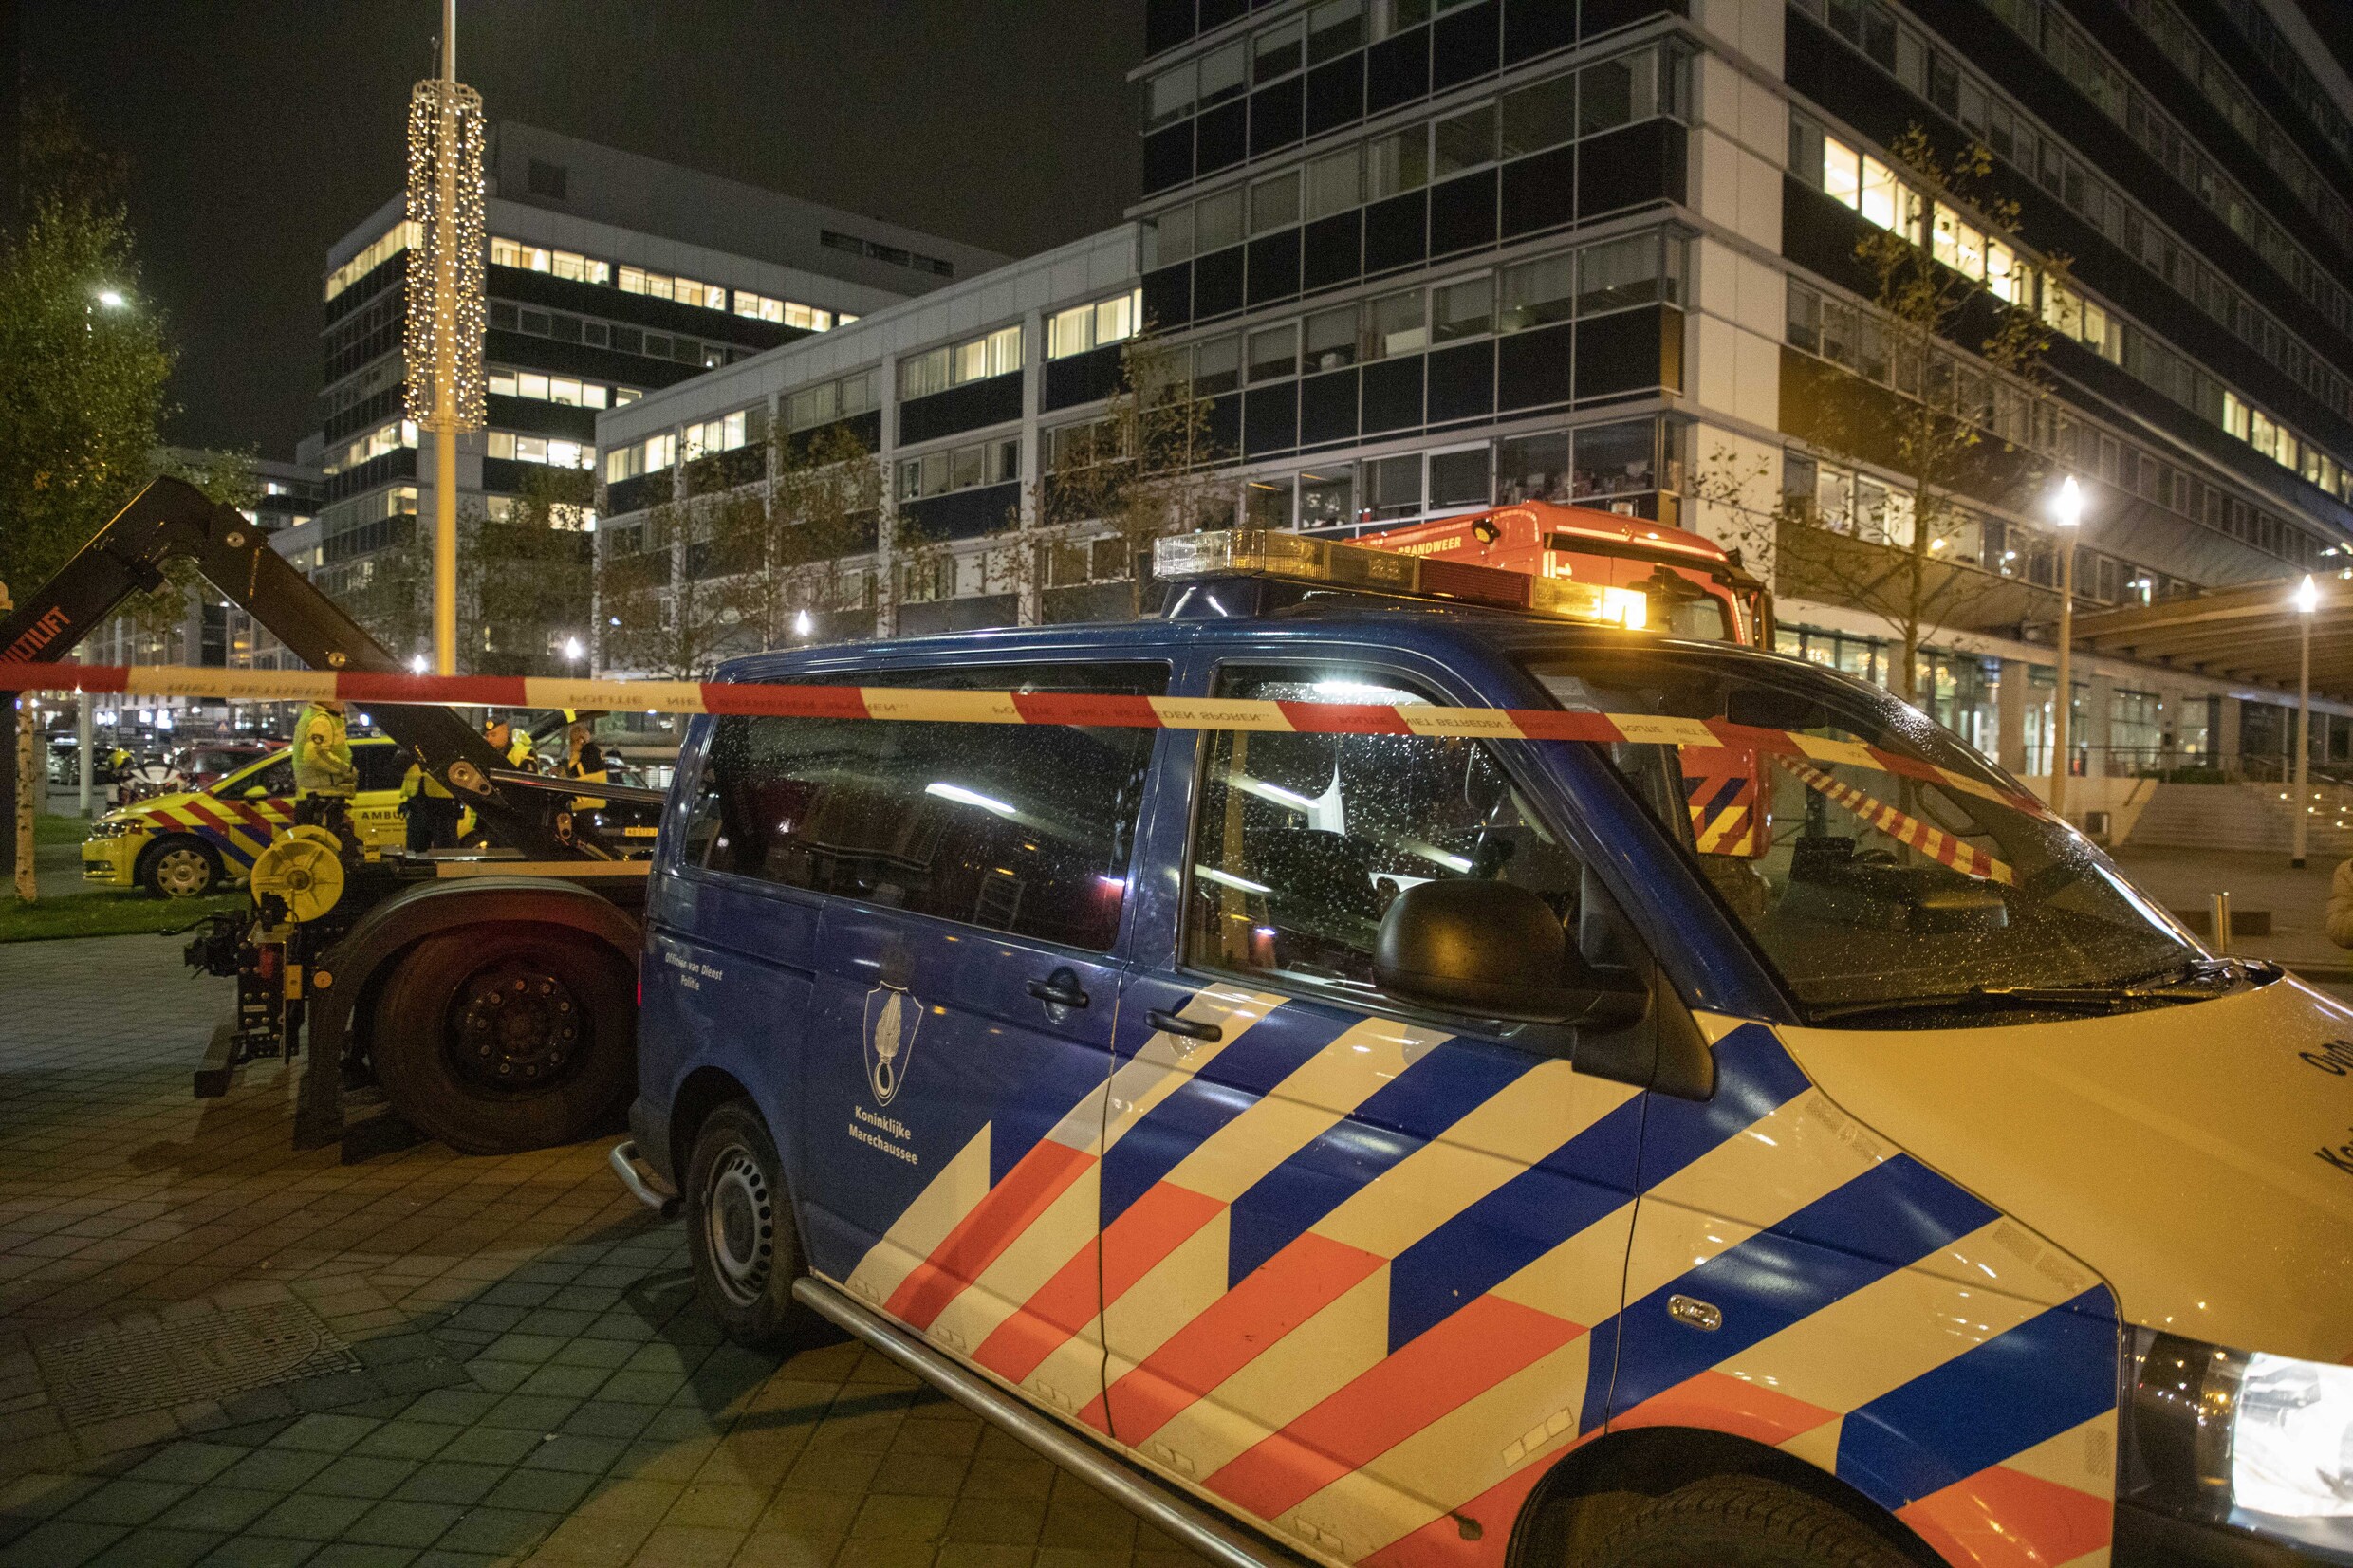 Incident op Schiphol blijkt vals alarm: piloot activeerde kapingsalarm per ongeluk